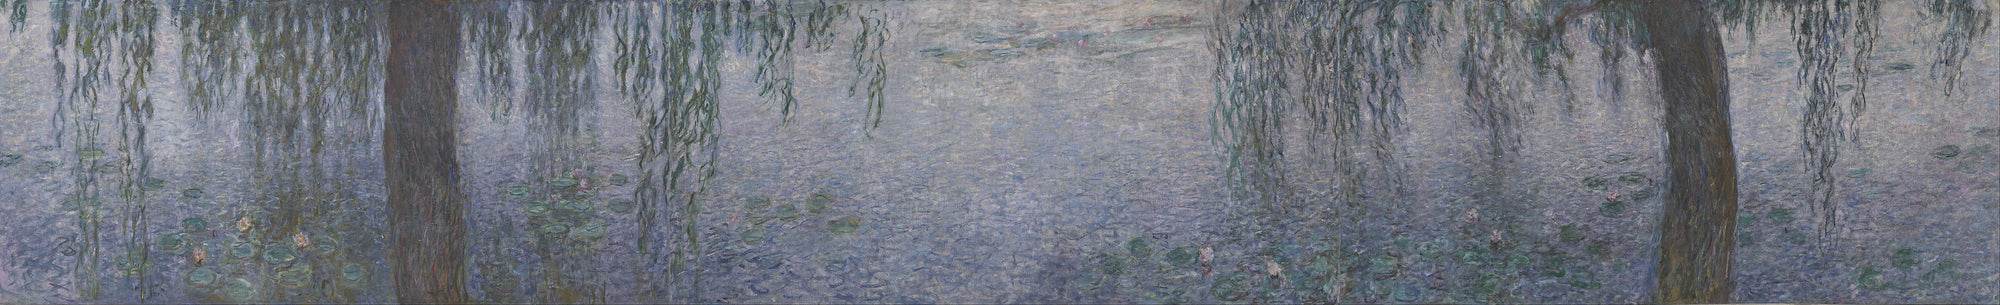 Nymphéas, le matin clair aux saules - Claude Monet